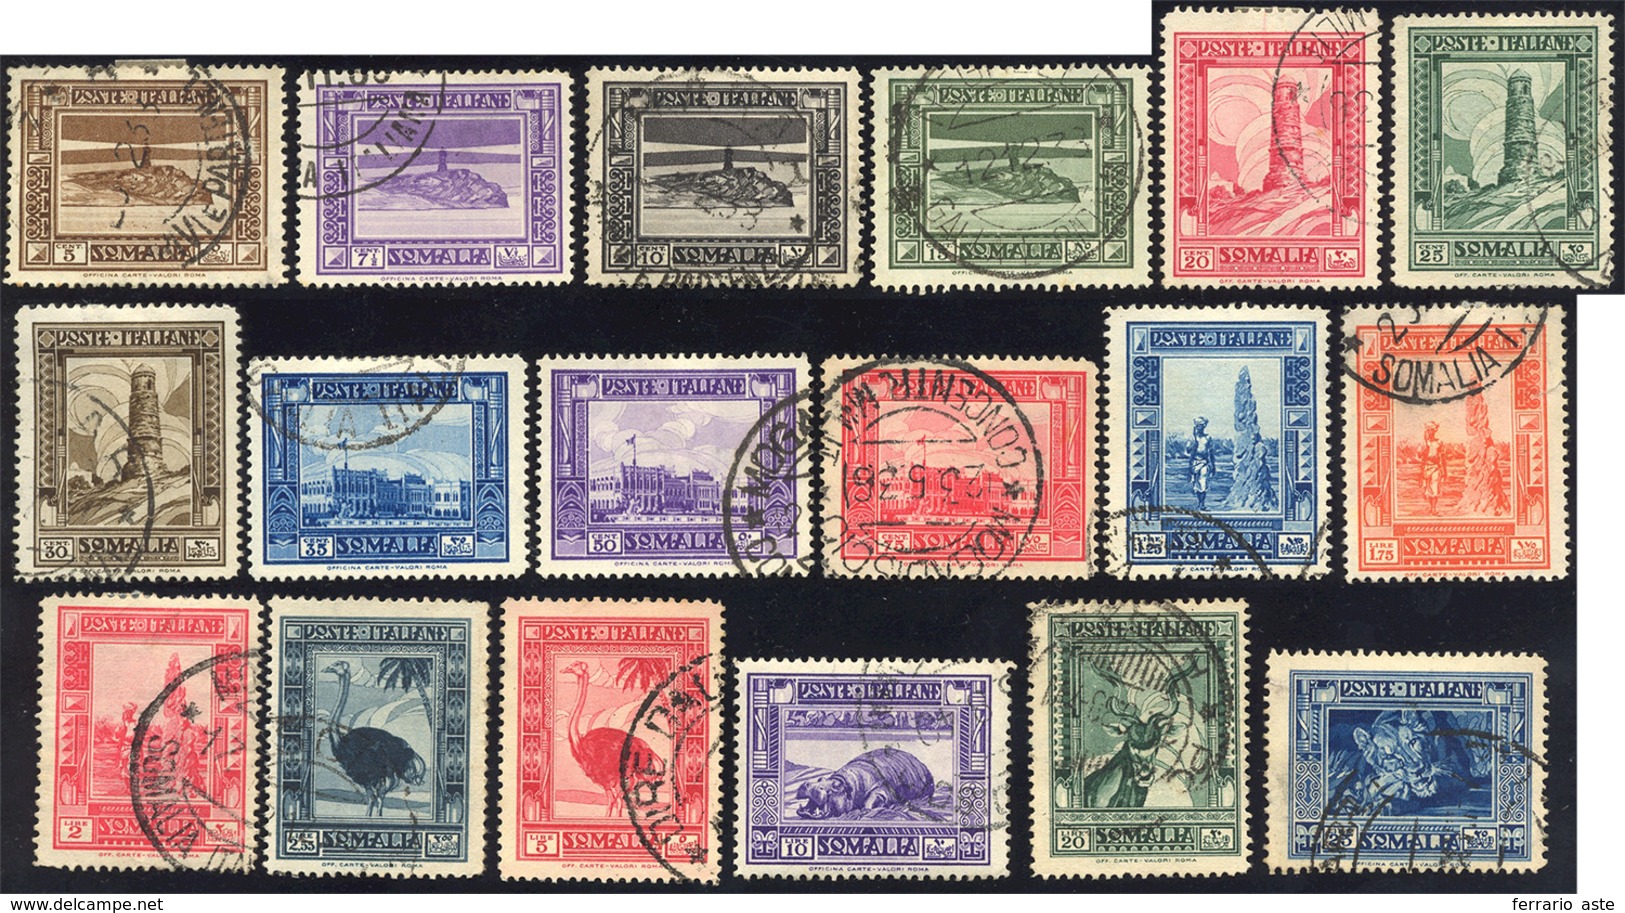 1935/38 - Pittorica, Dent. 14 (213/229), Usati, Perfetti. A. E R.Diena Per Il 20 Lire.... - Somalia